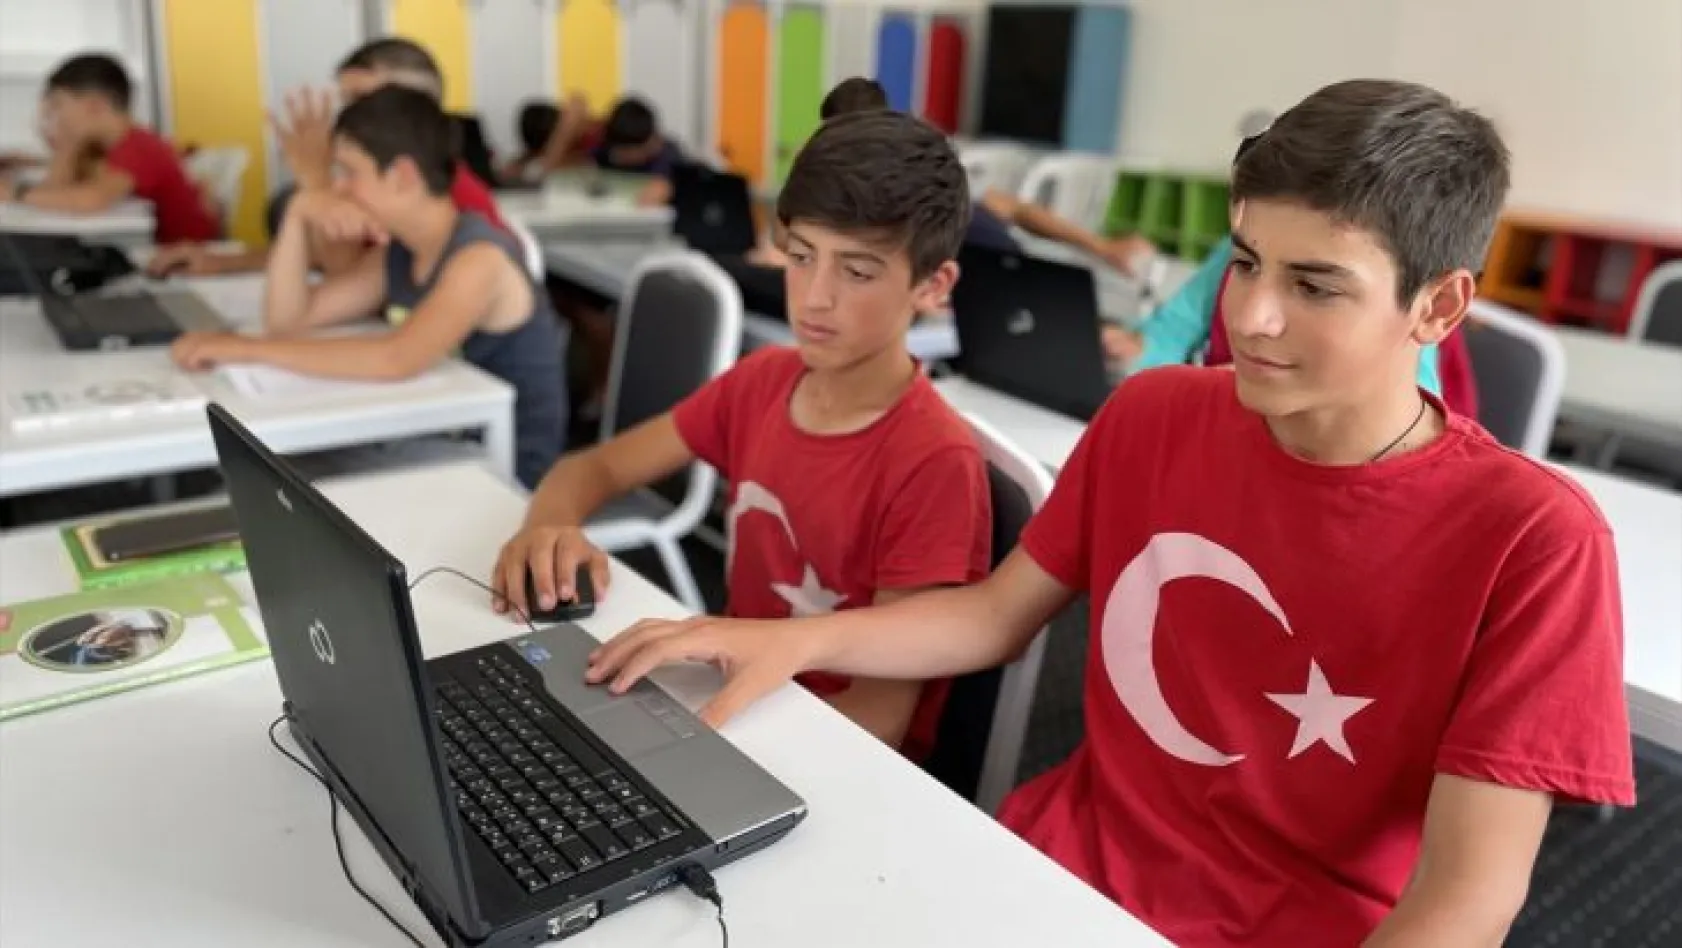 Türkiye'de eğitim görmekten mutlular